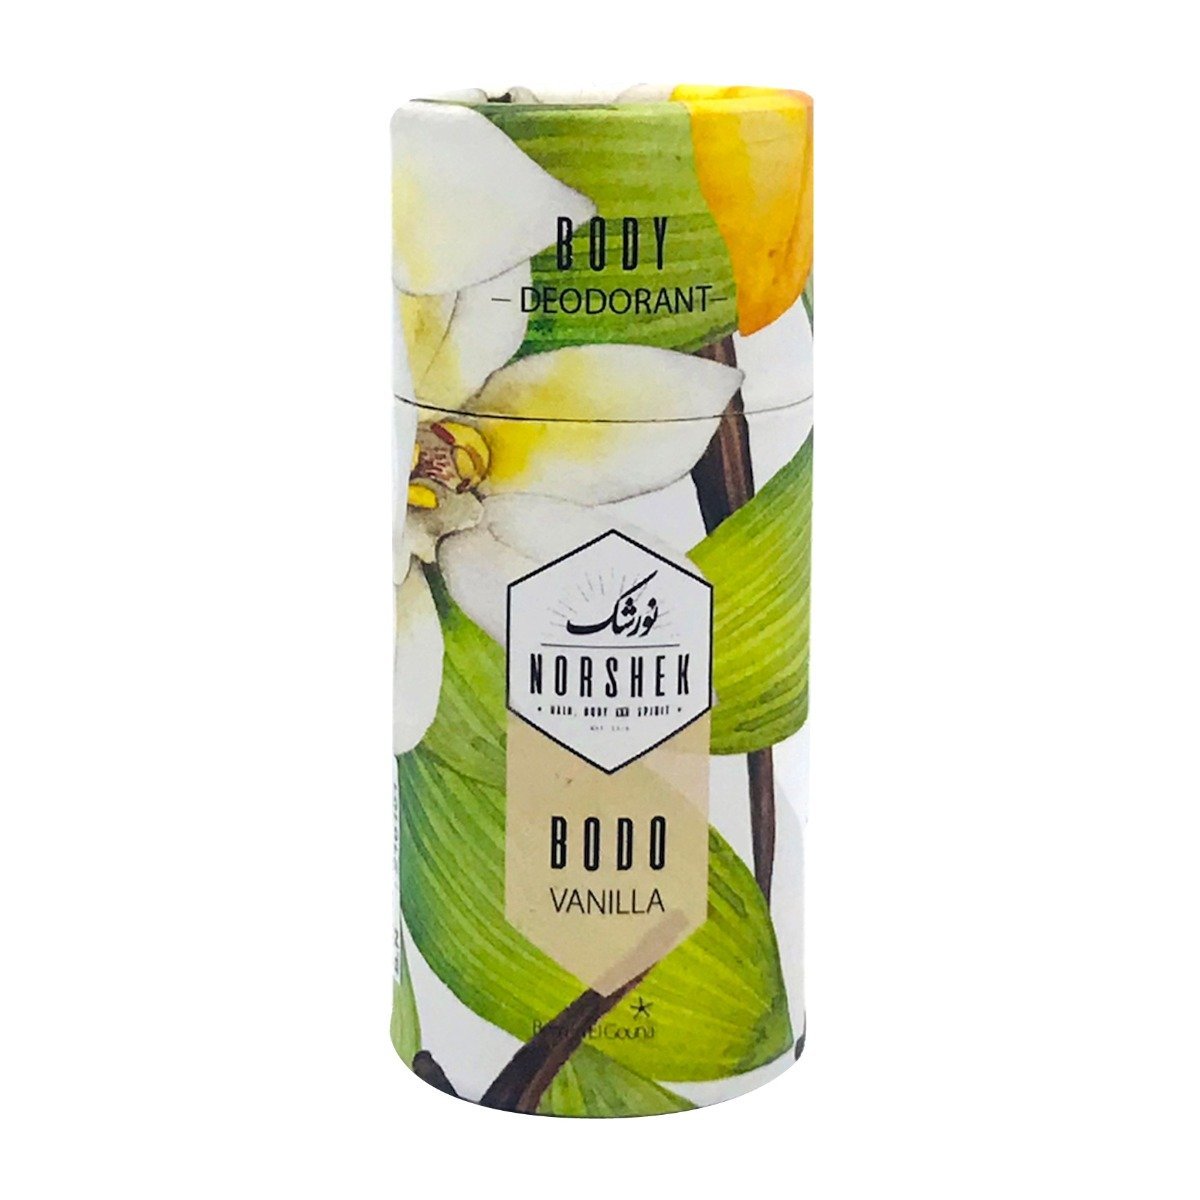 Norshek Bodo Deodorant 50gm - Vanilla - Bloom Pharmacy